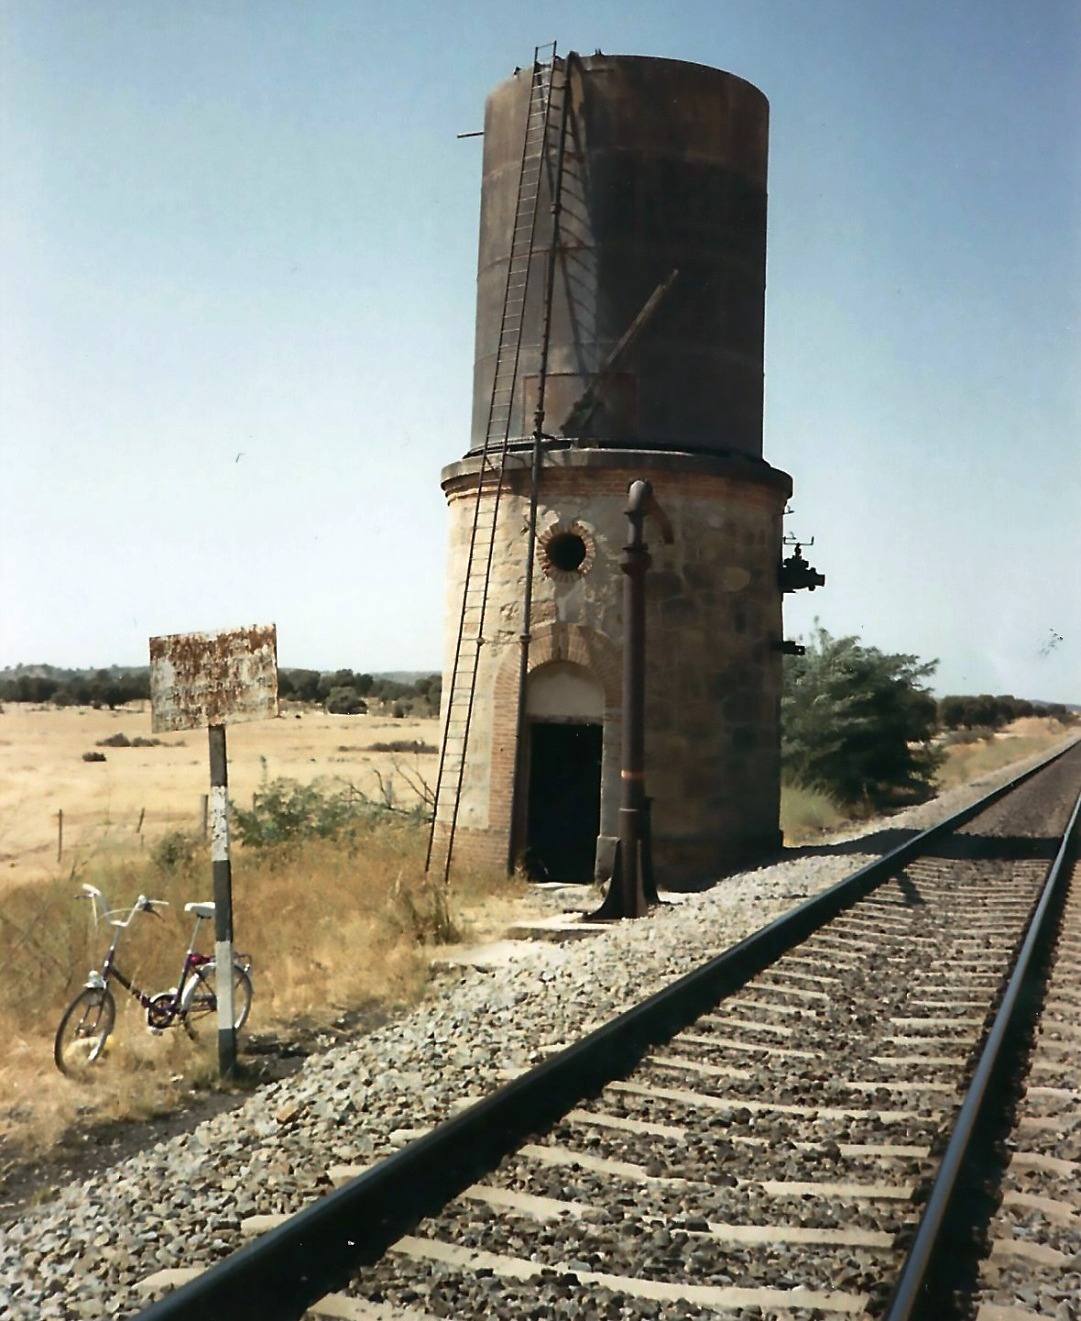 Torreta de surtidor de agua para las máquinas de ferrocarril. Aguada arroyo Santa María.